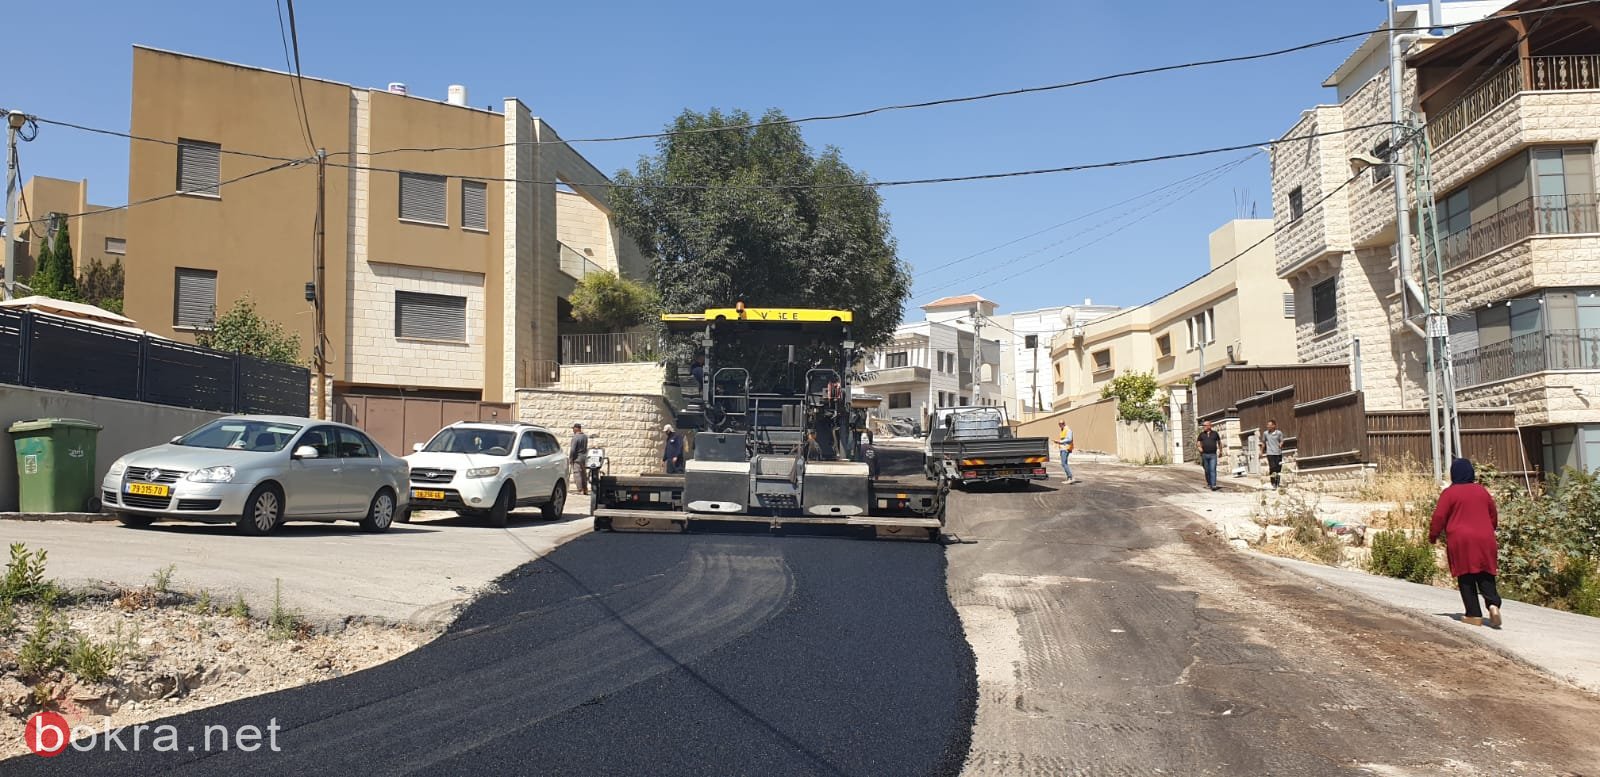 الناصرة: مشروع تعبيد شوارع المدينة يبدأ...حي البشارة يعبد اليوم-1